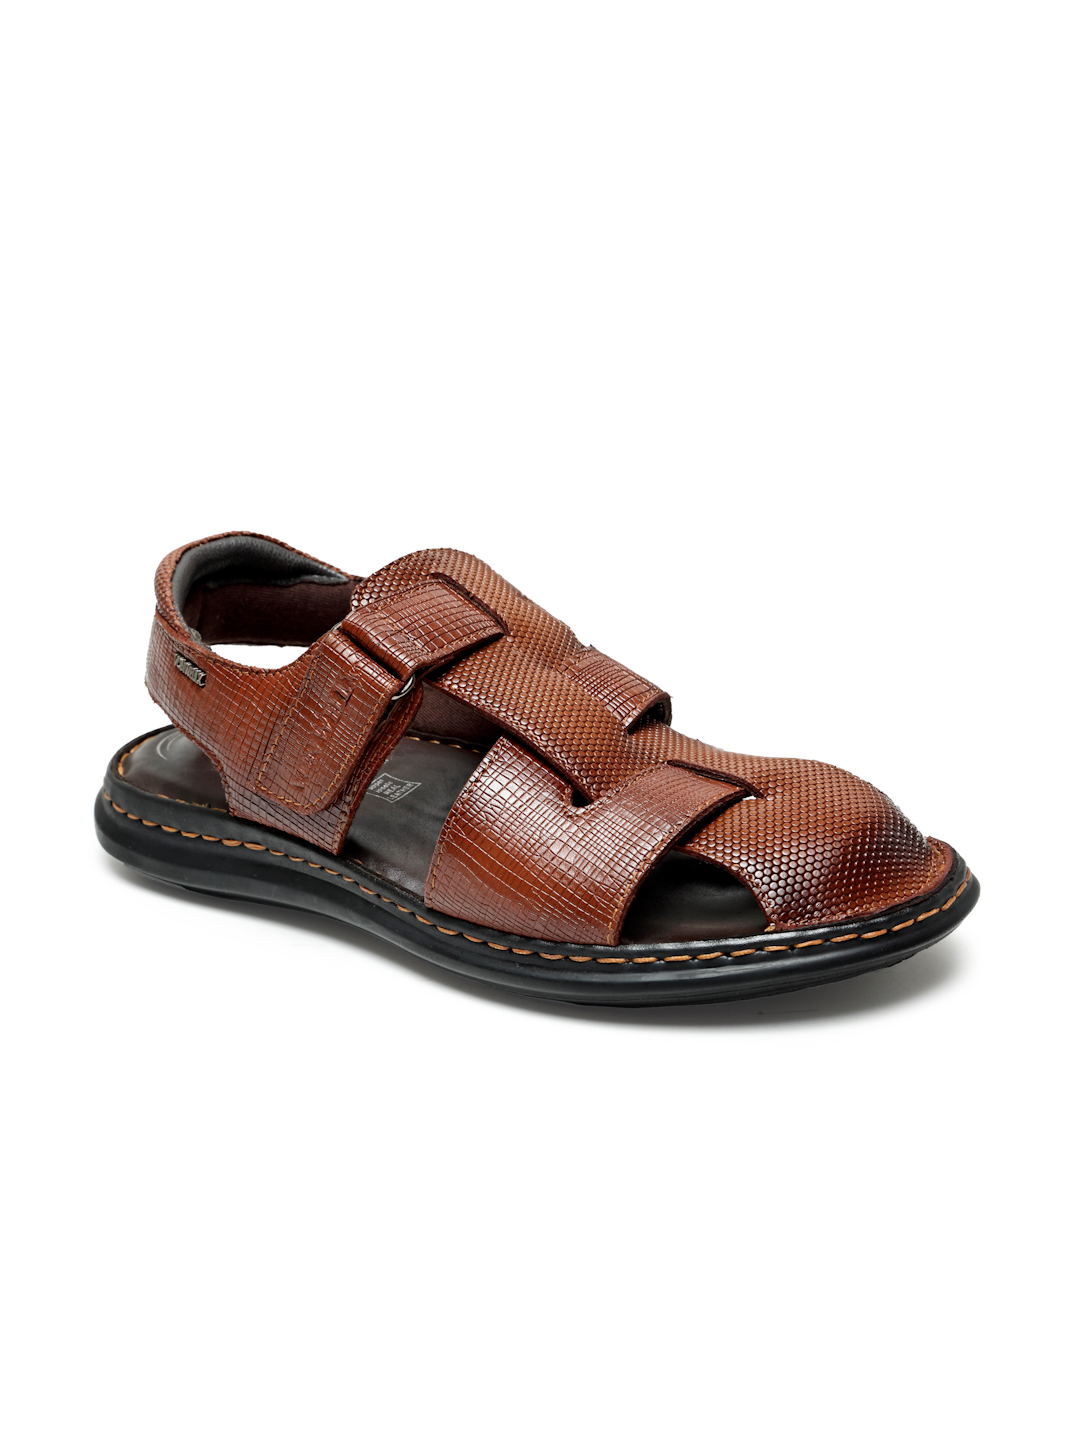 Buy Von Wellx Germany Comfort Men's Tan Sandals Morgen Online in Karnataka